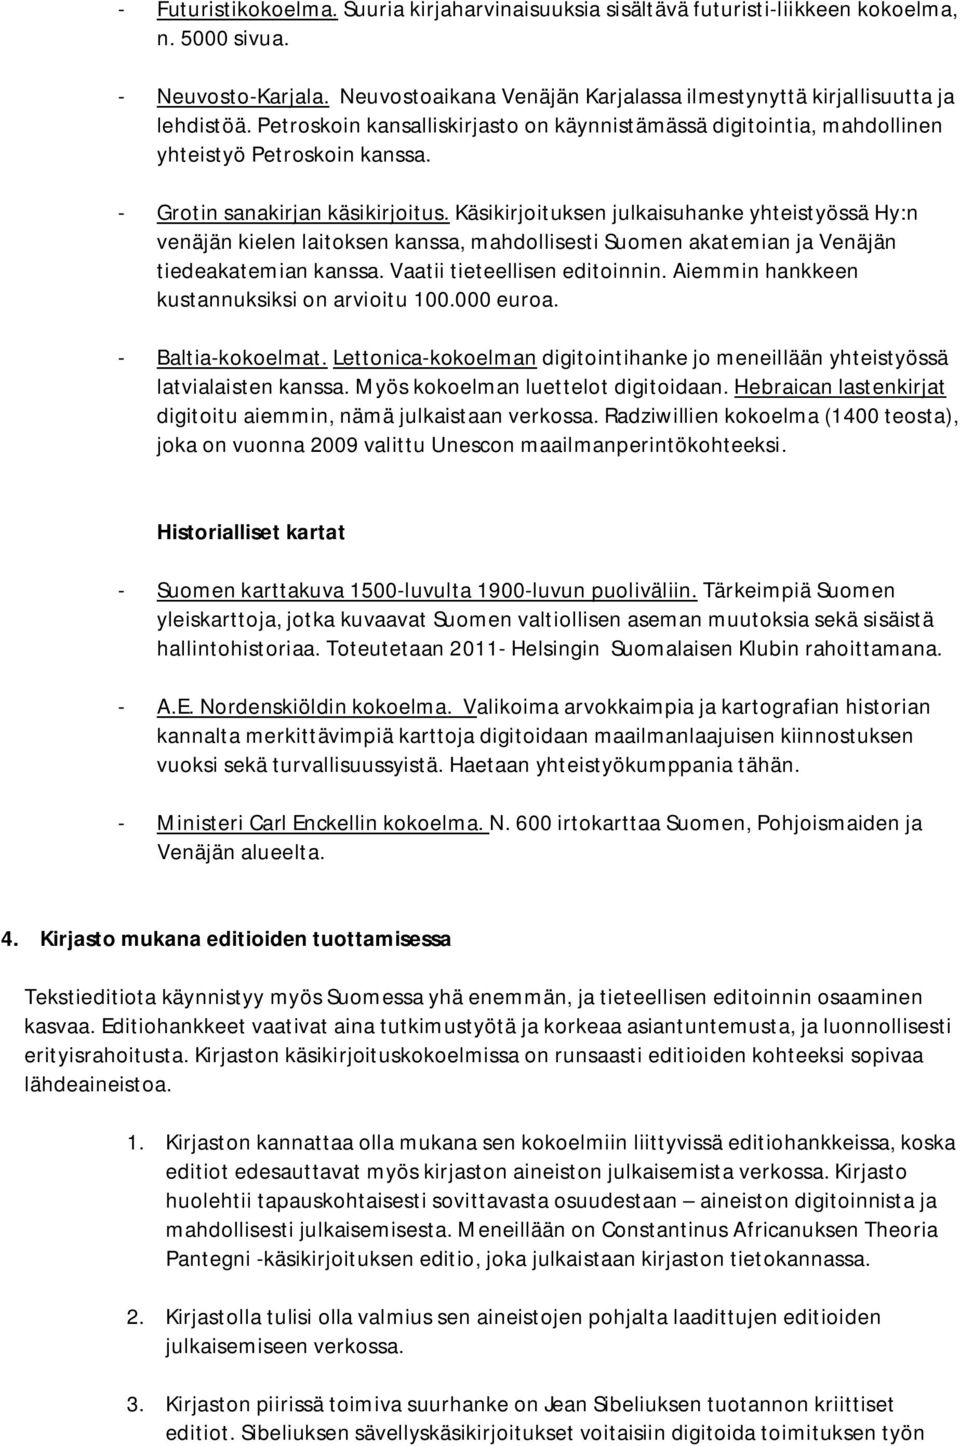 Käsikirjoituksen julkaisuhanke yhteistyössä Hy:n venäjän kielen laitoksen kanssa, mahdollisesti Suomen akatemian ja Venäjän tiedeakatemian kanssa. Vaatii tieteellisen editoinnin.